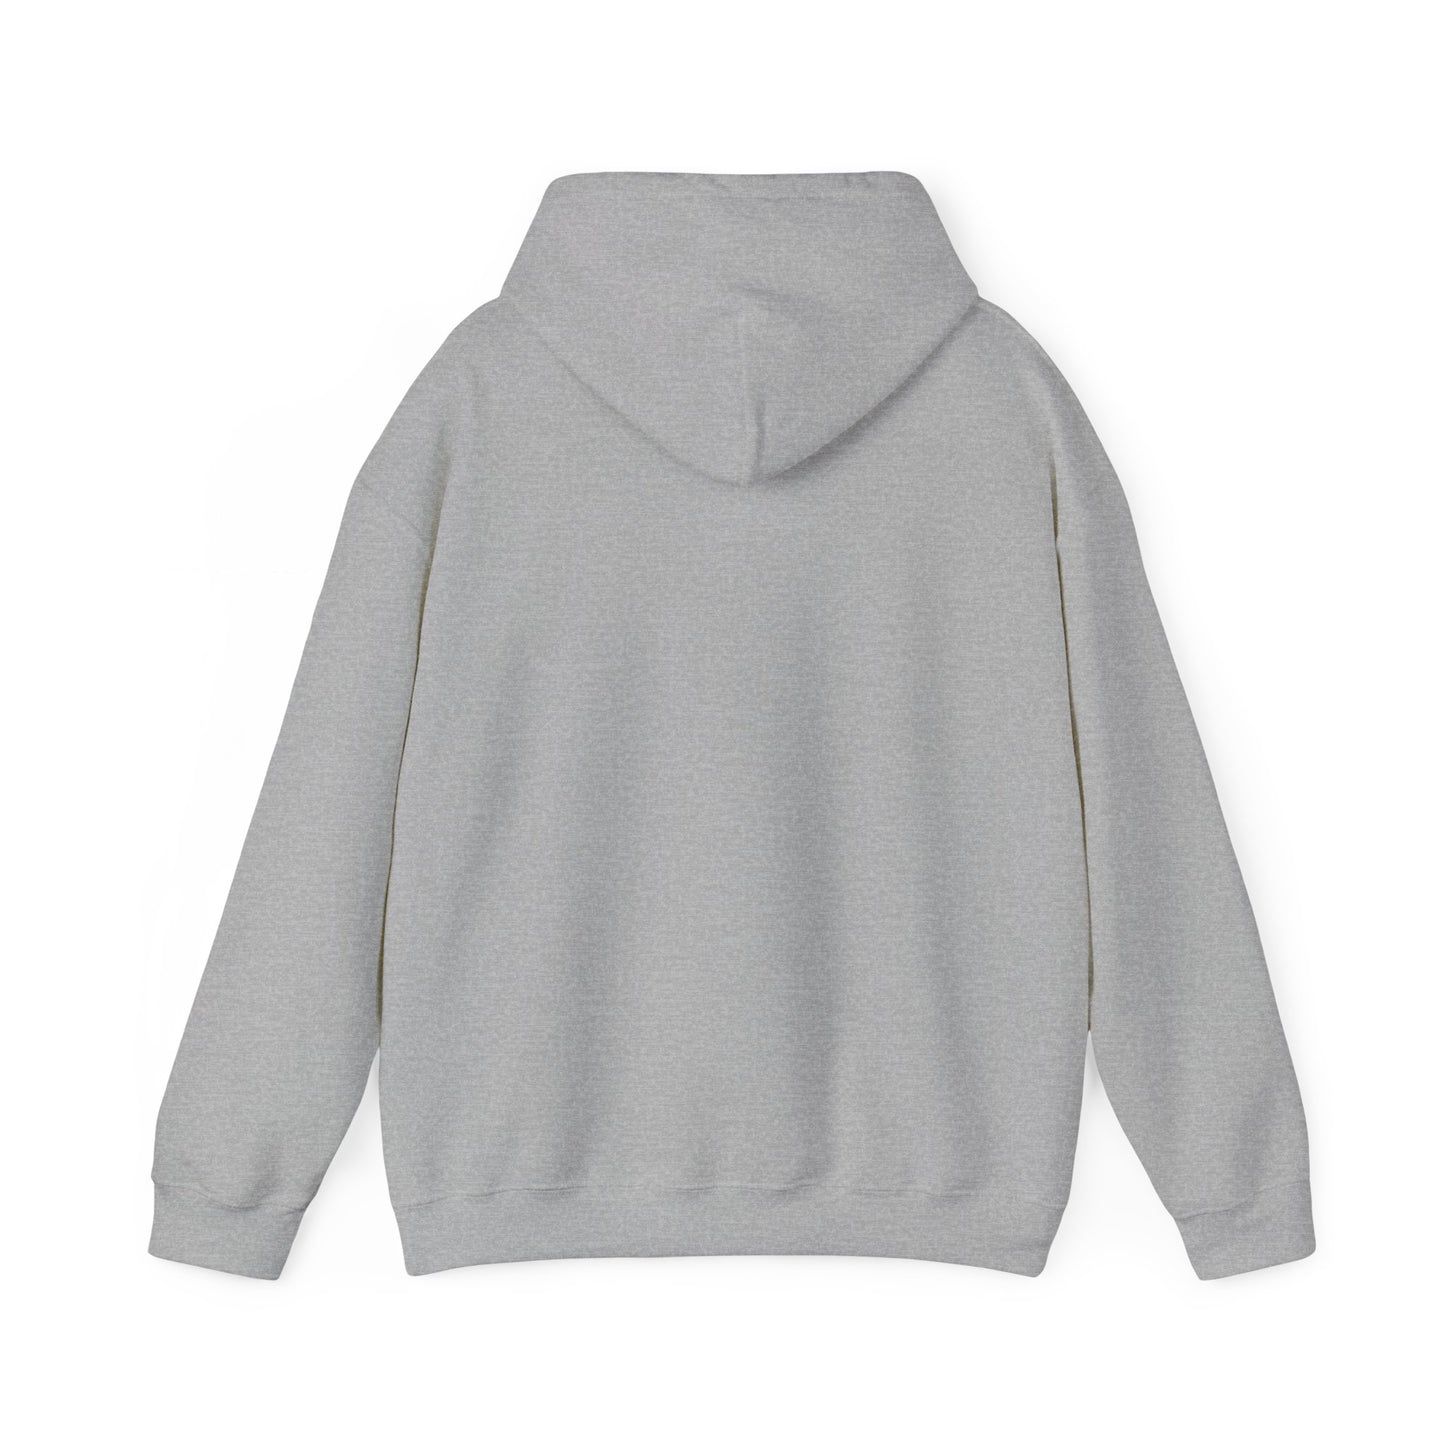 DKCU Unisex Heavy Blend™ Hooded Sweatshirt